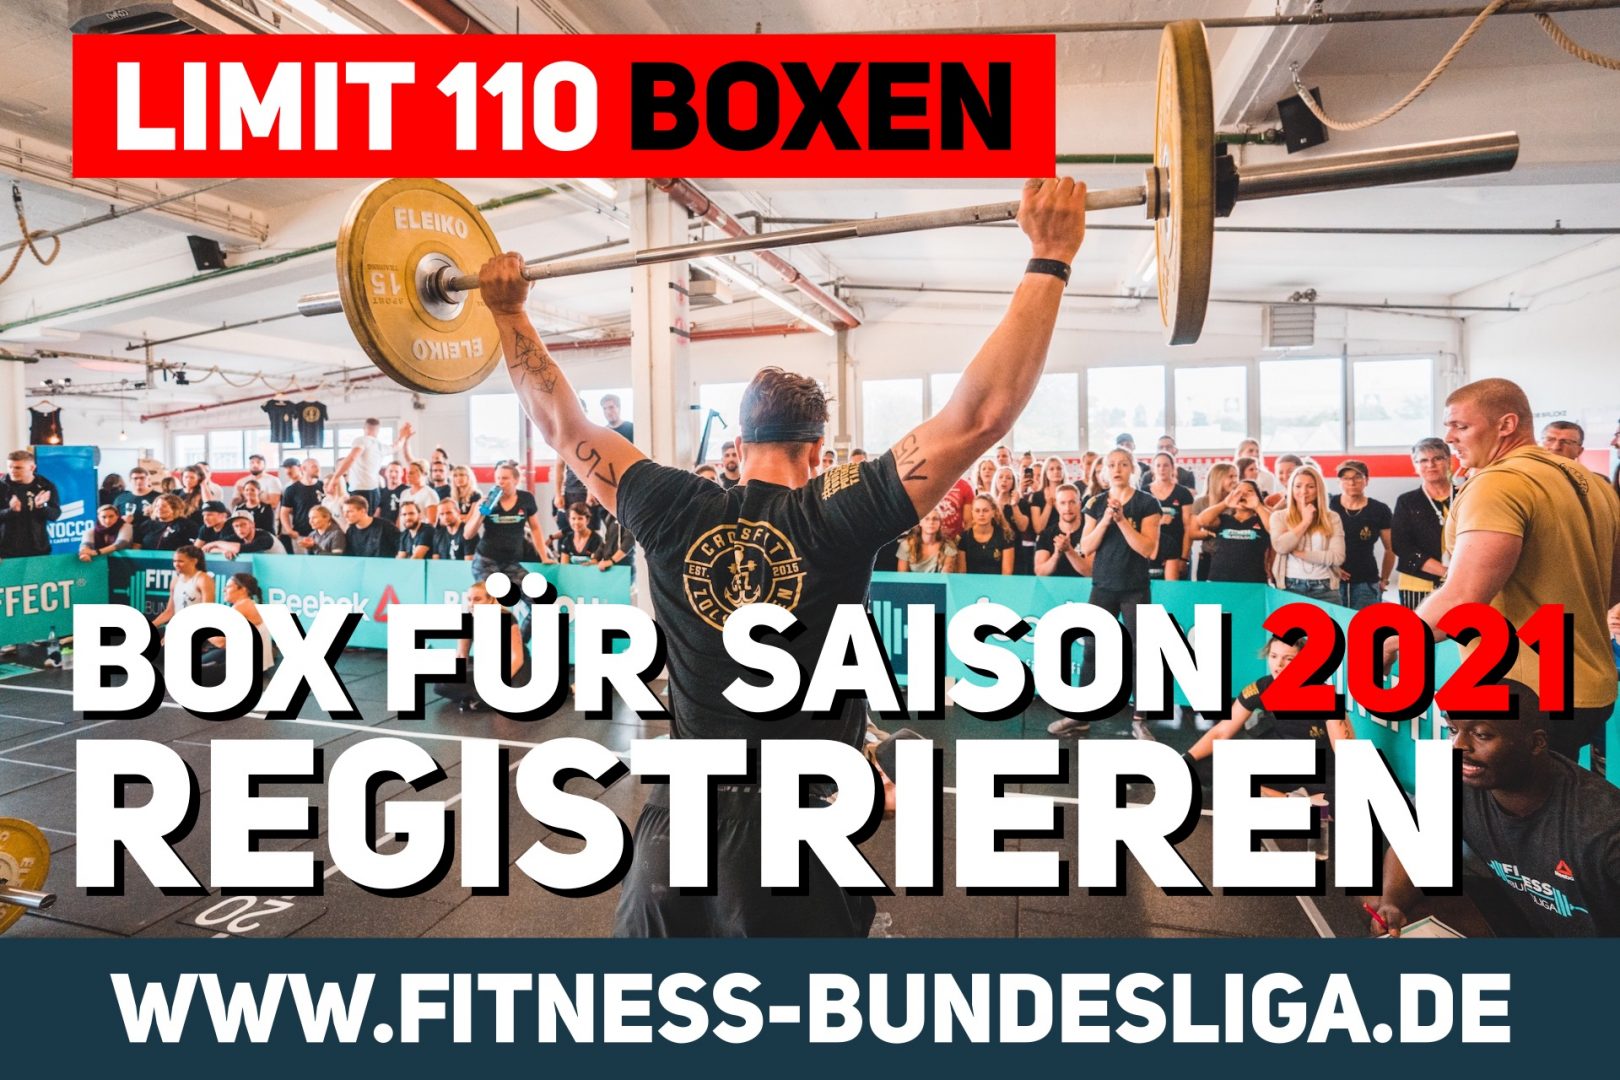 Fitness Bundesliga – Boxen für die Saison 2021 registrieren!